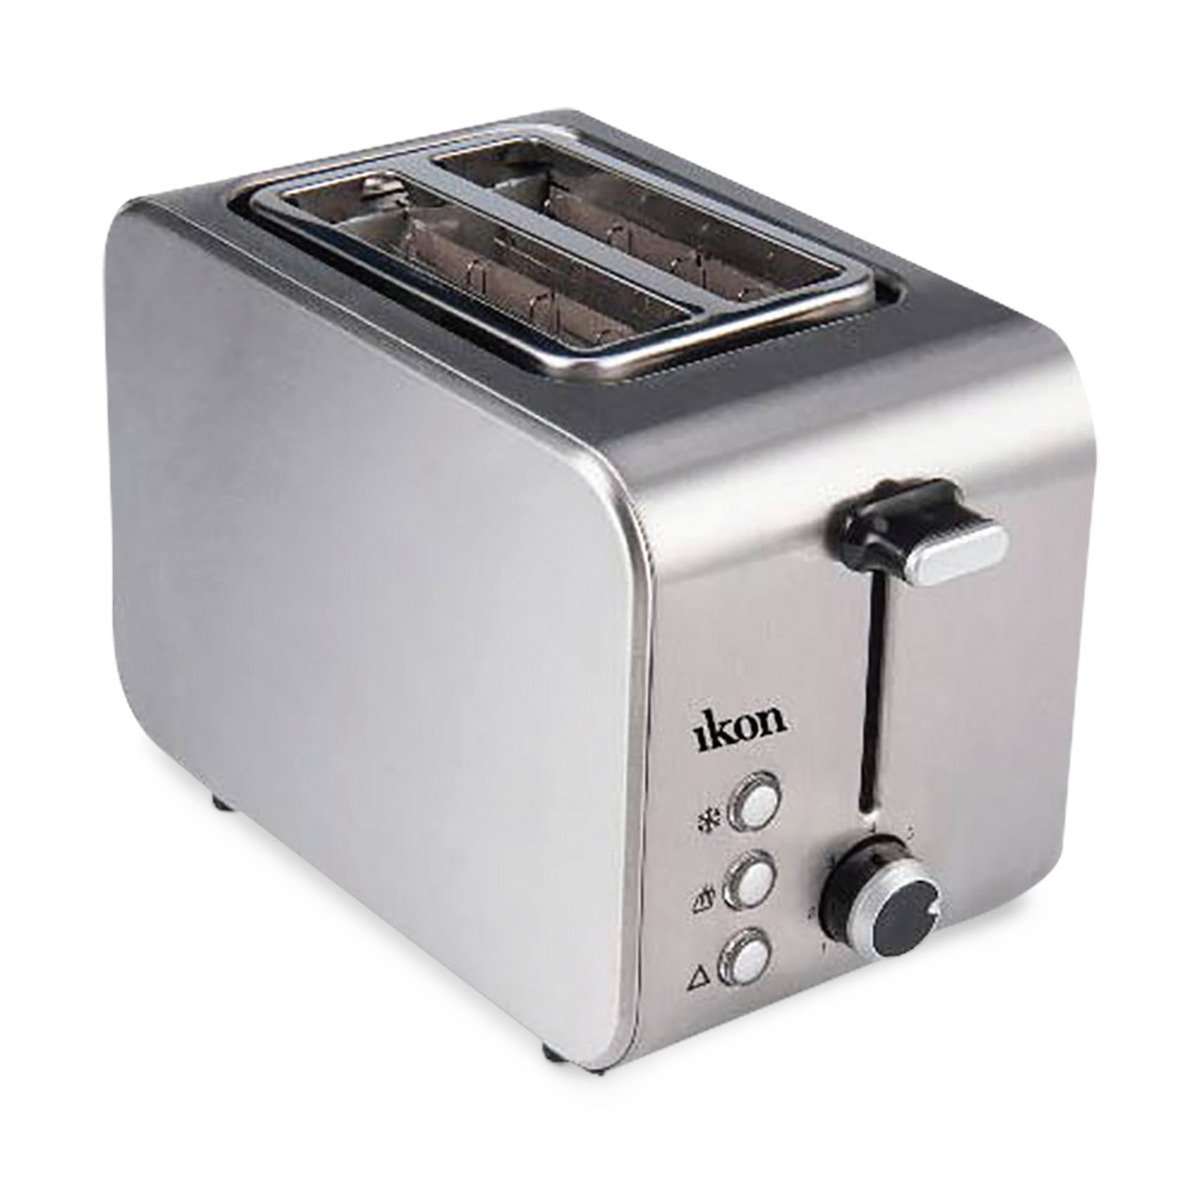 Buy Ikon Stainless Steel Bread Toaster K8117 2Slice Online at Best Price | Bread Toasters | Lulu Kuwait in Saudi Arabia